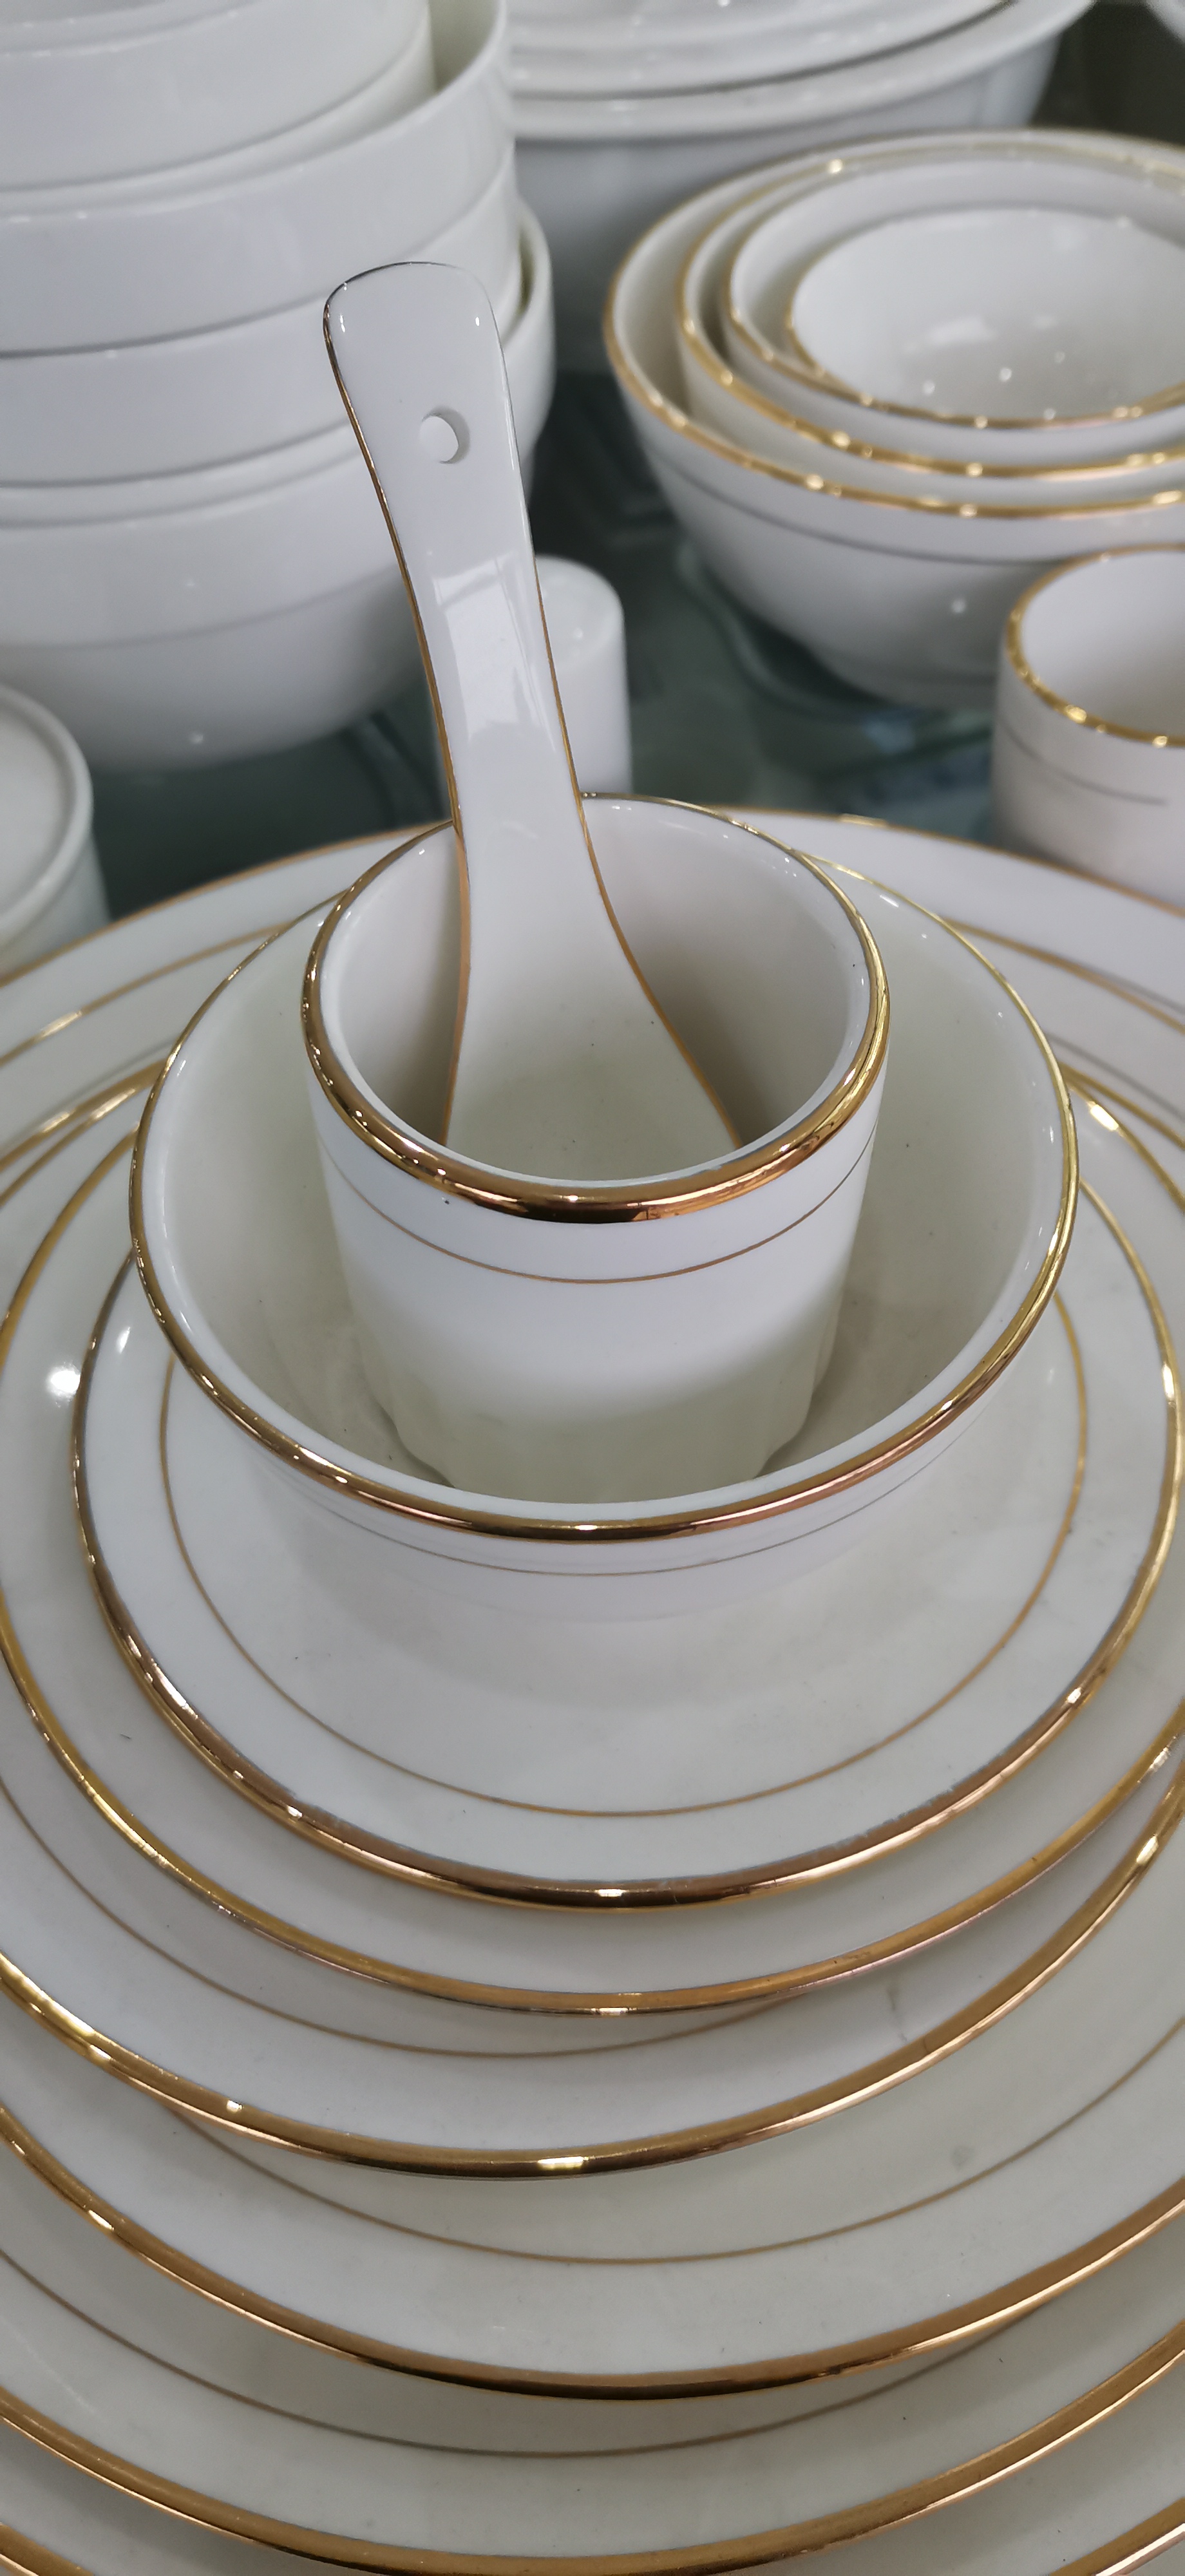 新款陶瓷餐具礼品套装 亮丽陶瓷小时代中式餐具厂家定做